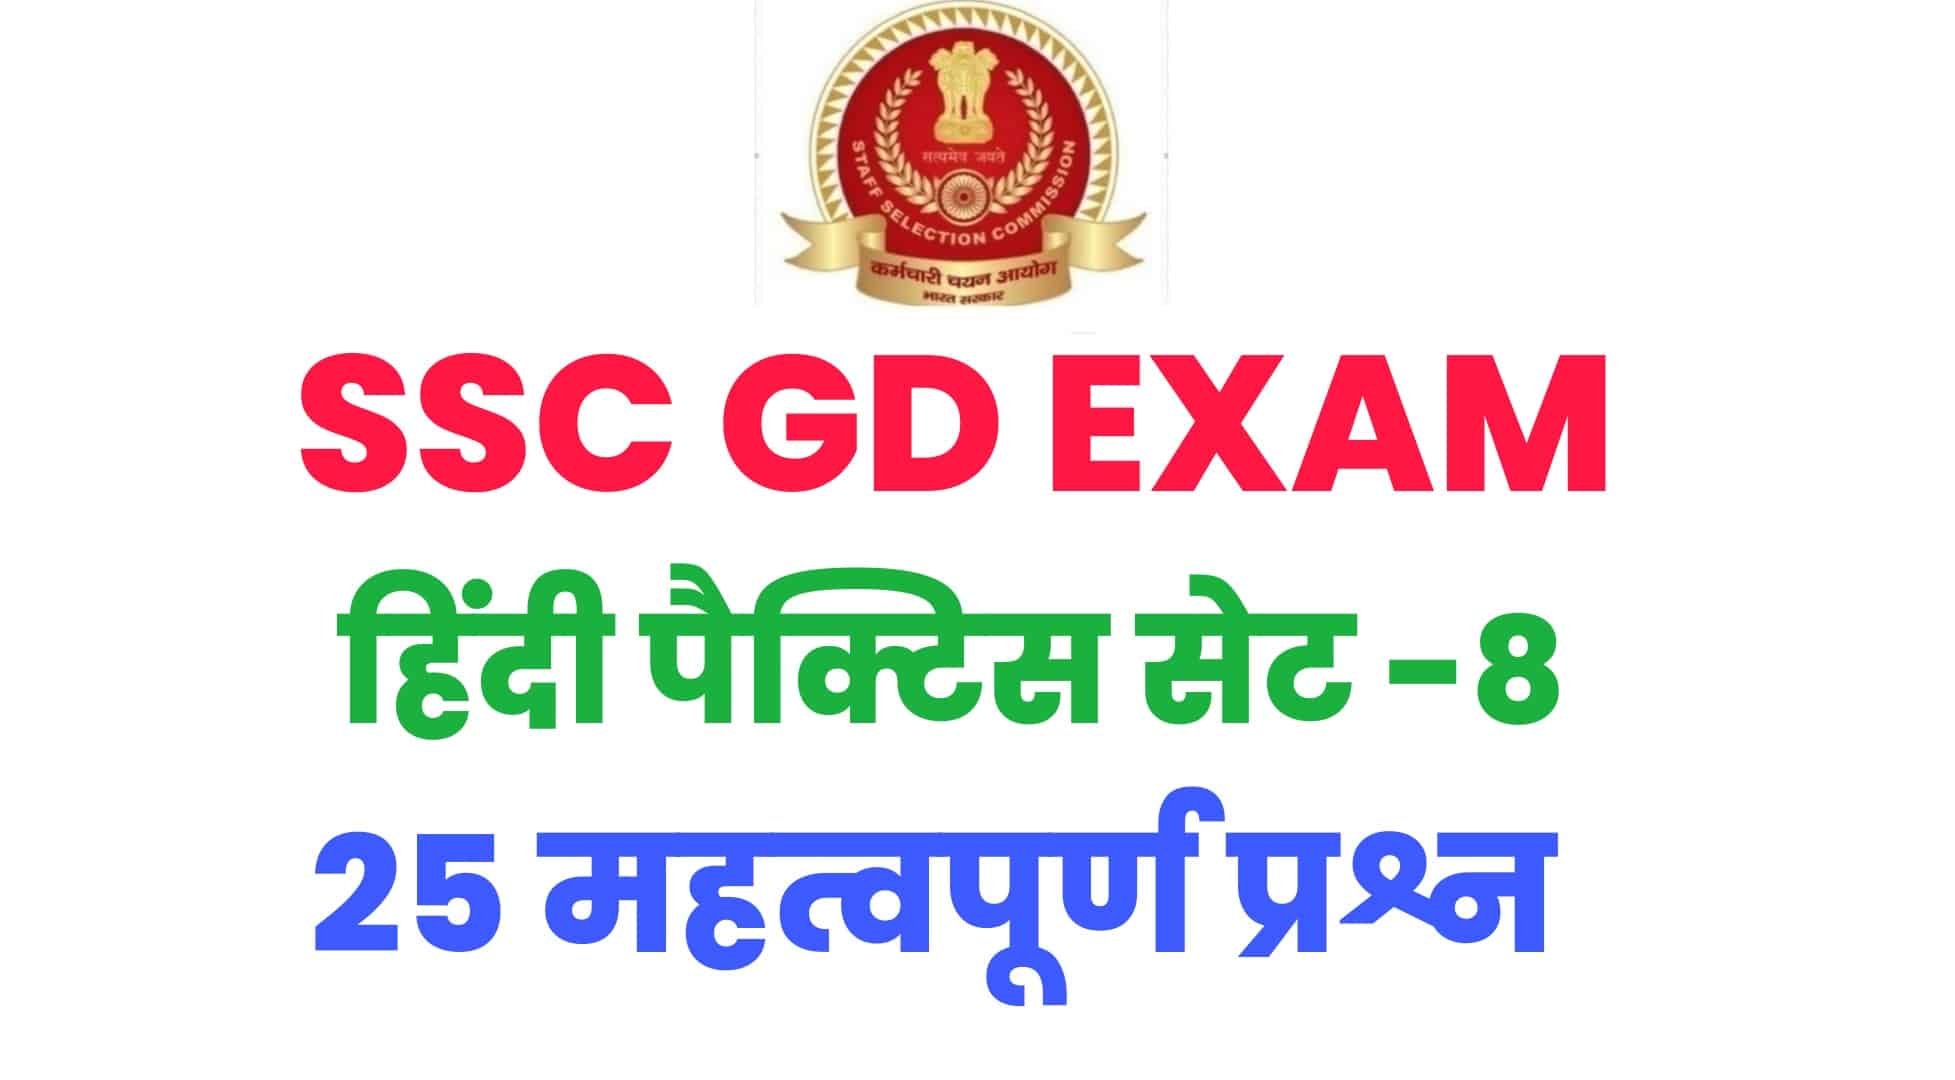 SSC GD हिंदी प्रैक्टिस सेट -8 : विगत वर्षों के इन मुख्य हिंदी के प्रश्नों का जरूर करें अध्ययन